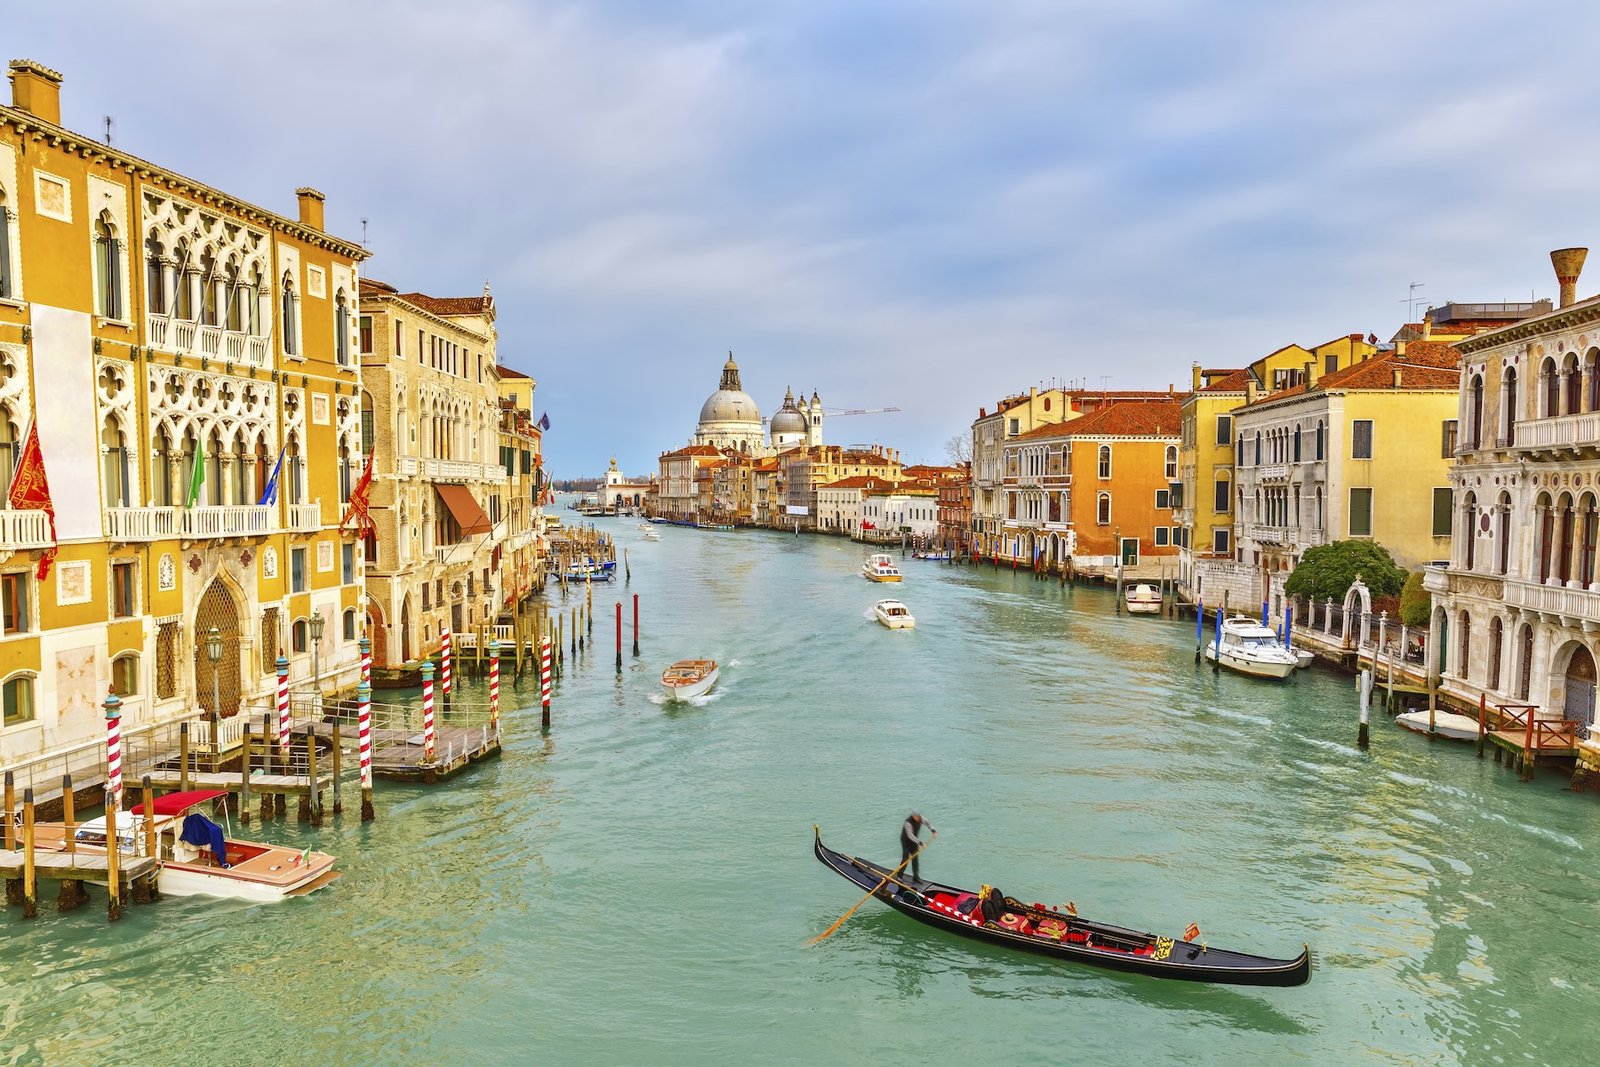 Recorrer en góndola los canales venecianos es un plan estupendo si se viaja al país mediterráneo